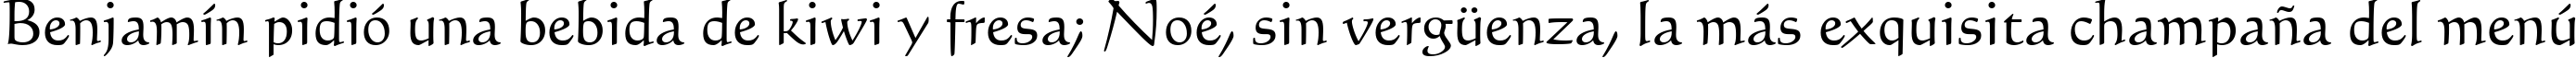 Пример написания шрифтом Calligraphic 421 BT текста на испанском